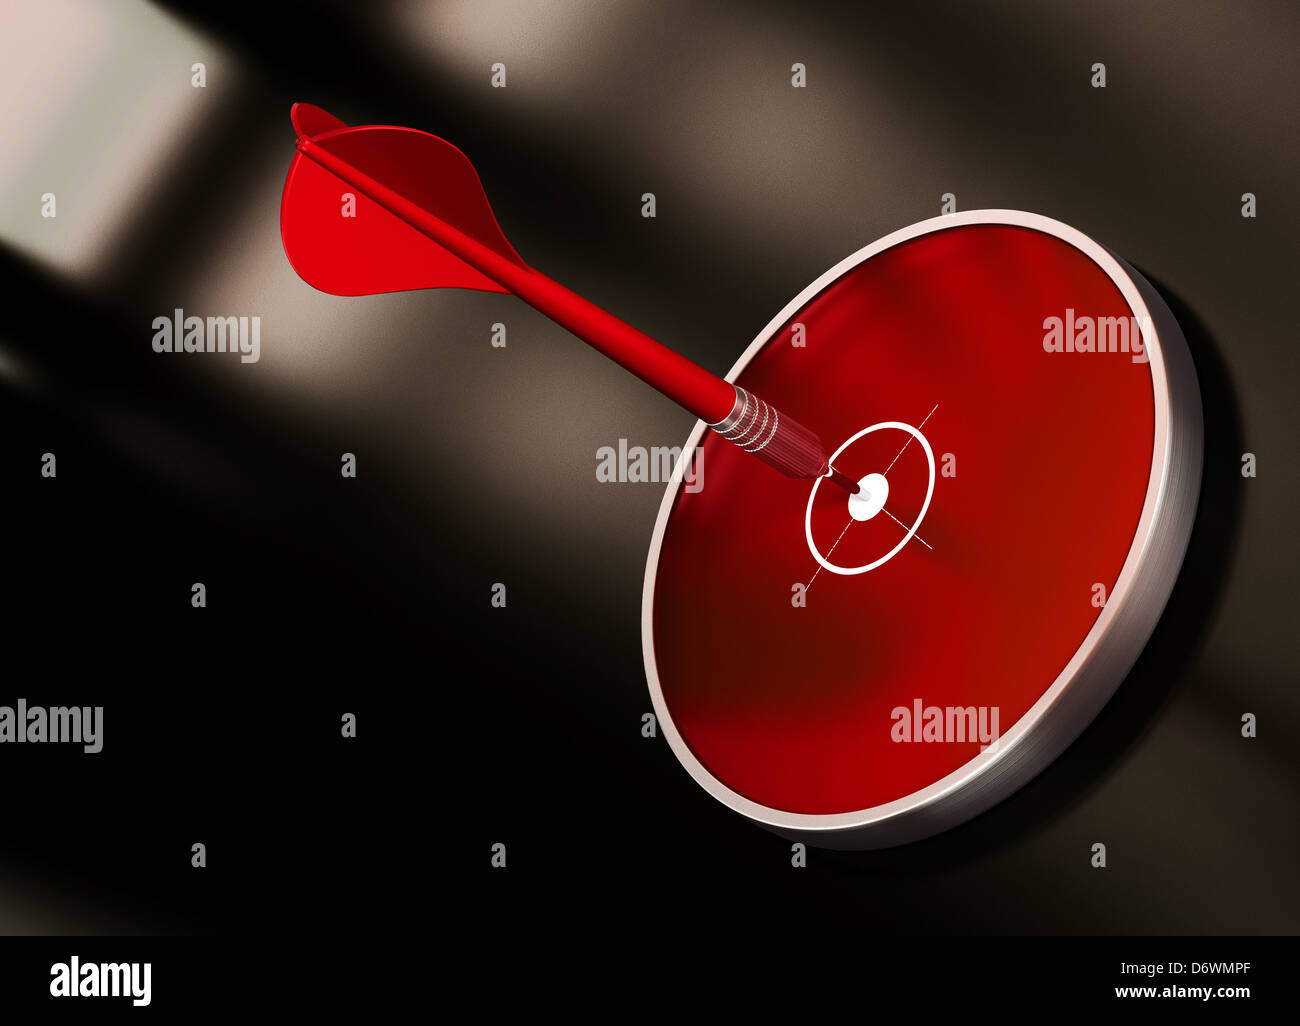 Zielschießen mit einem roten Pfeil auf der Mitte des modernen Ziel. Bild ist über einen dunklen Hintergrund schwarz und braun. Stockfoto